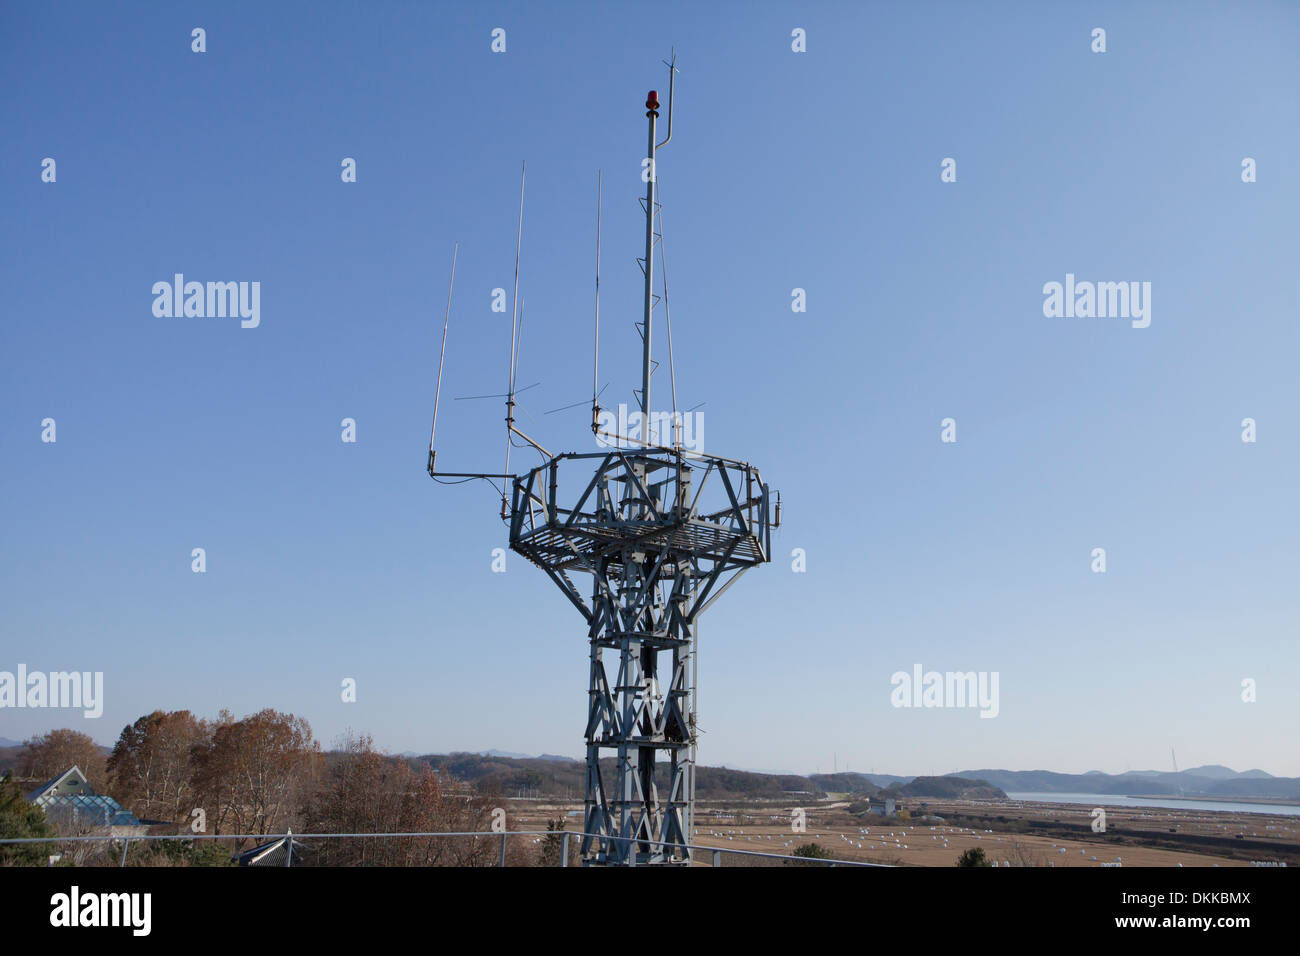 Radio antenna tower near DMZ - Imjingak, Paju, South Korea Stock Photo